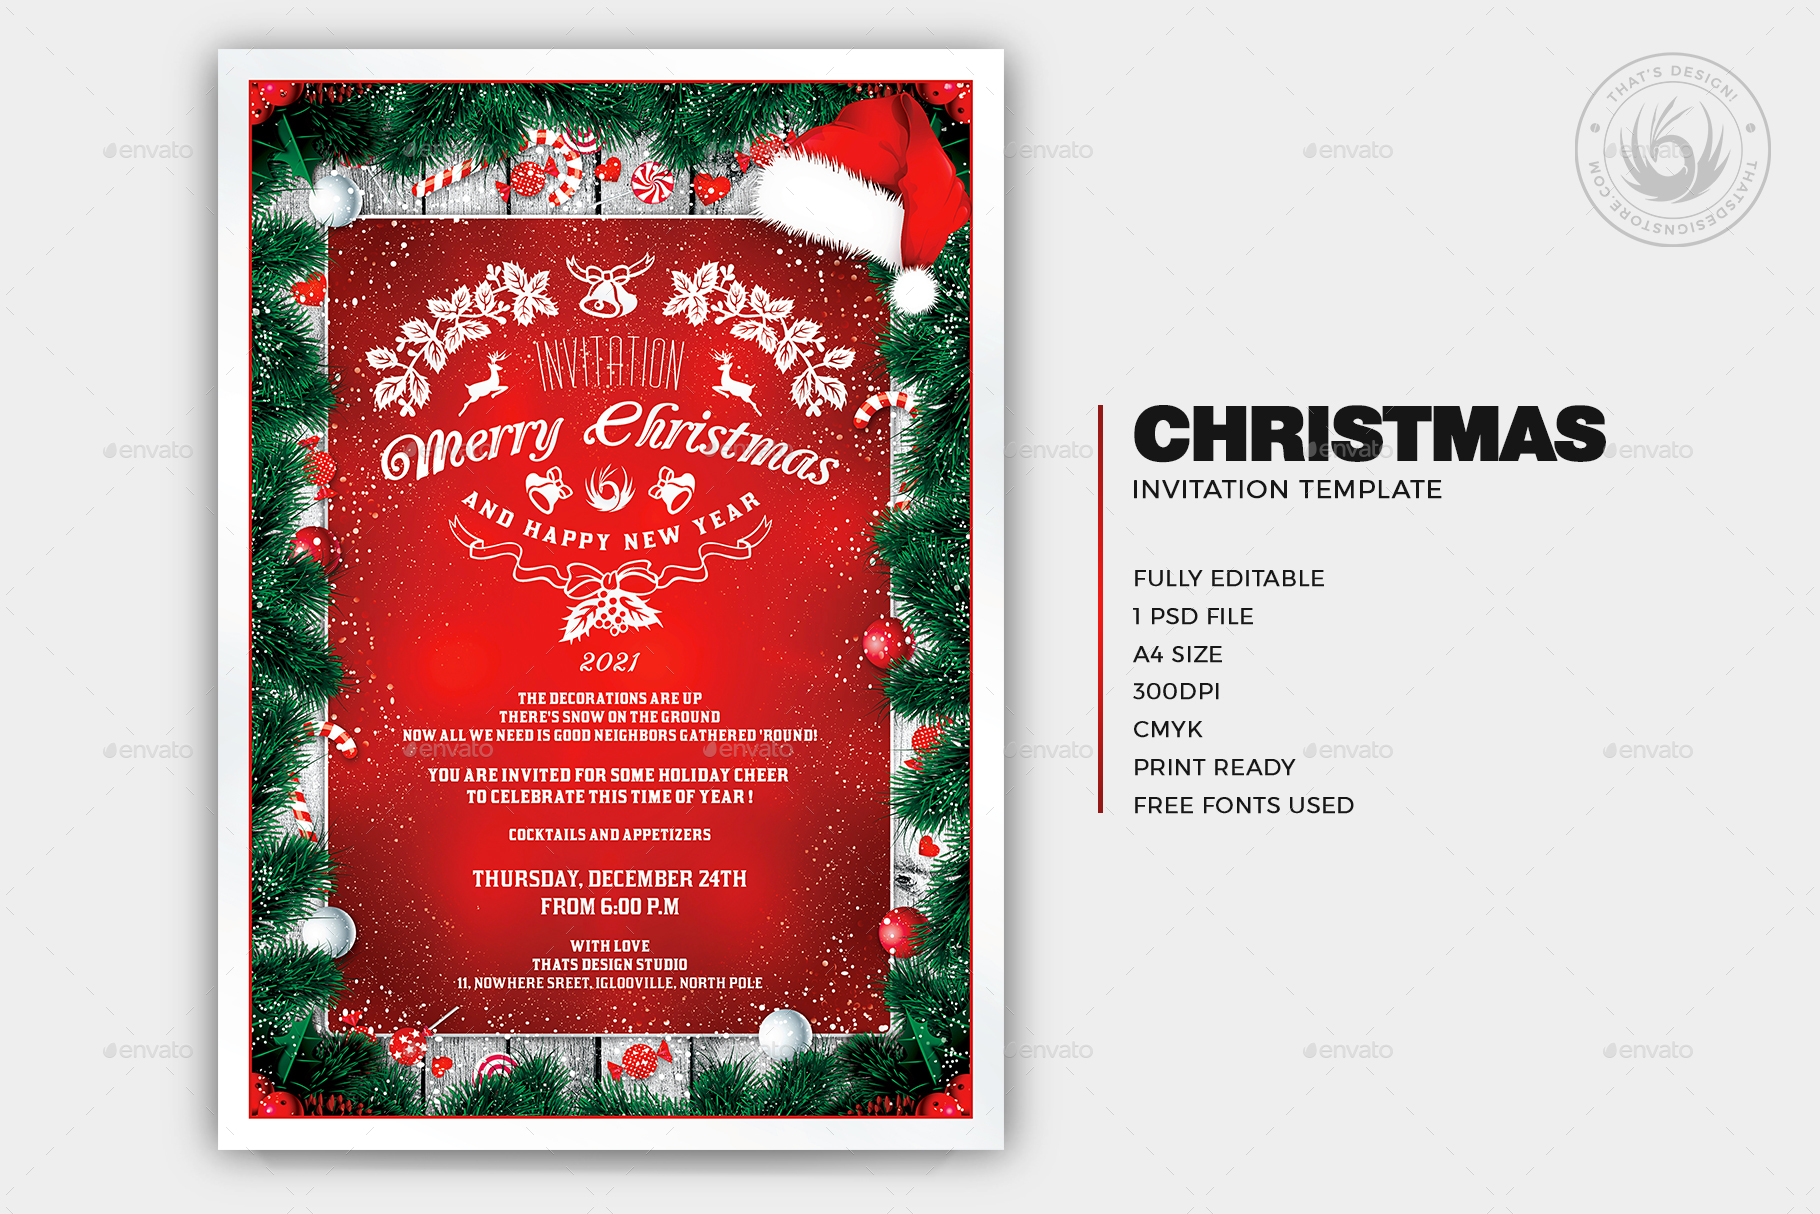 Christmas Invitation Template V6 by lou606 | GraphicRiver